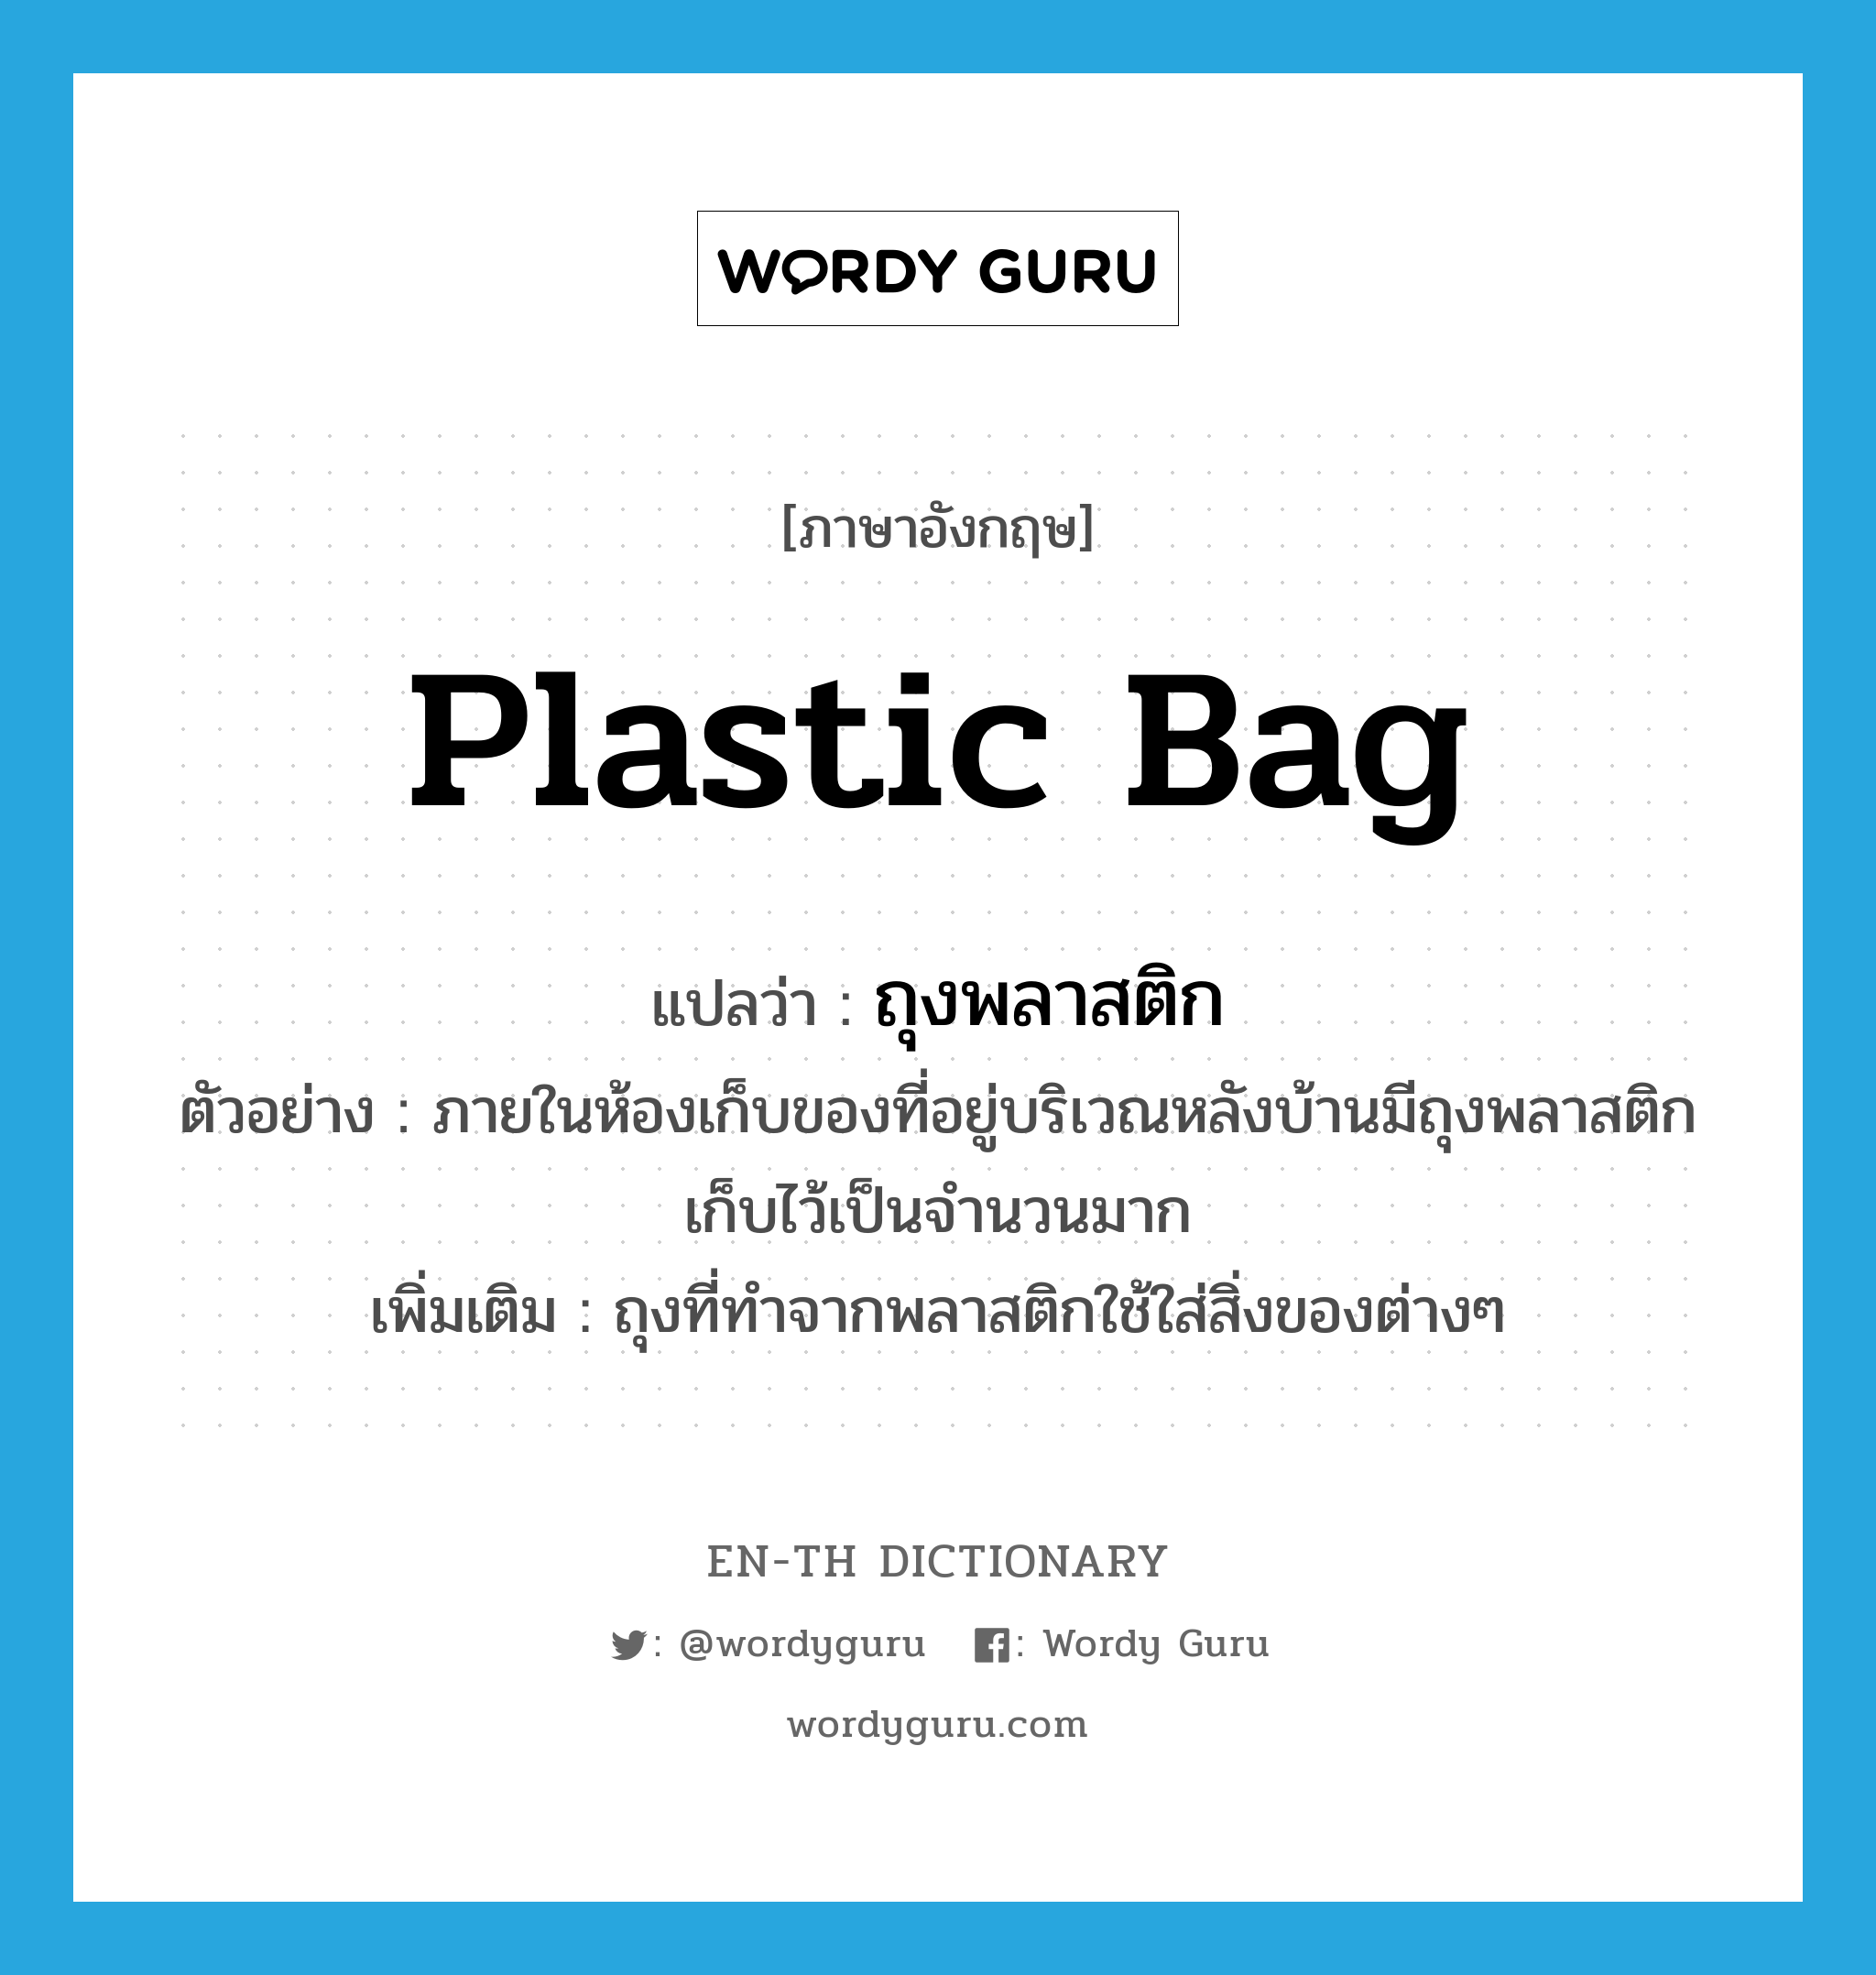 plastic bag แปลว่า?, คำศัพท์ภาษาอังกฤษ plastic bag แปลว่า ถุงพลาสติก ประเภท N ตัวอย่าง ภายในห้องเก็บของที่อยู่บริเวณหลังบ้านมีถุงพลาสติกเก็บไว้เป็นจำนวนมาก เพิ่มเติม ถุงที่ทำจากพลาสติกใช้ใส่สิ่งของต่างๆ หมวด N